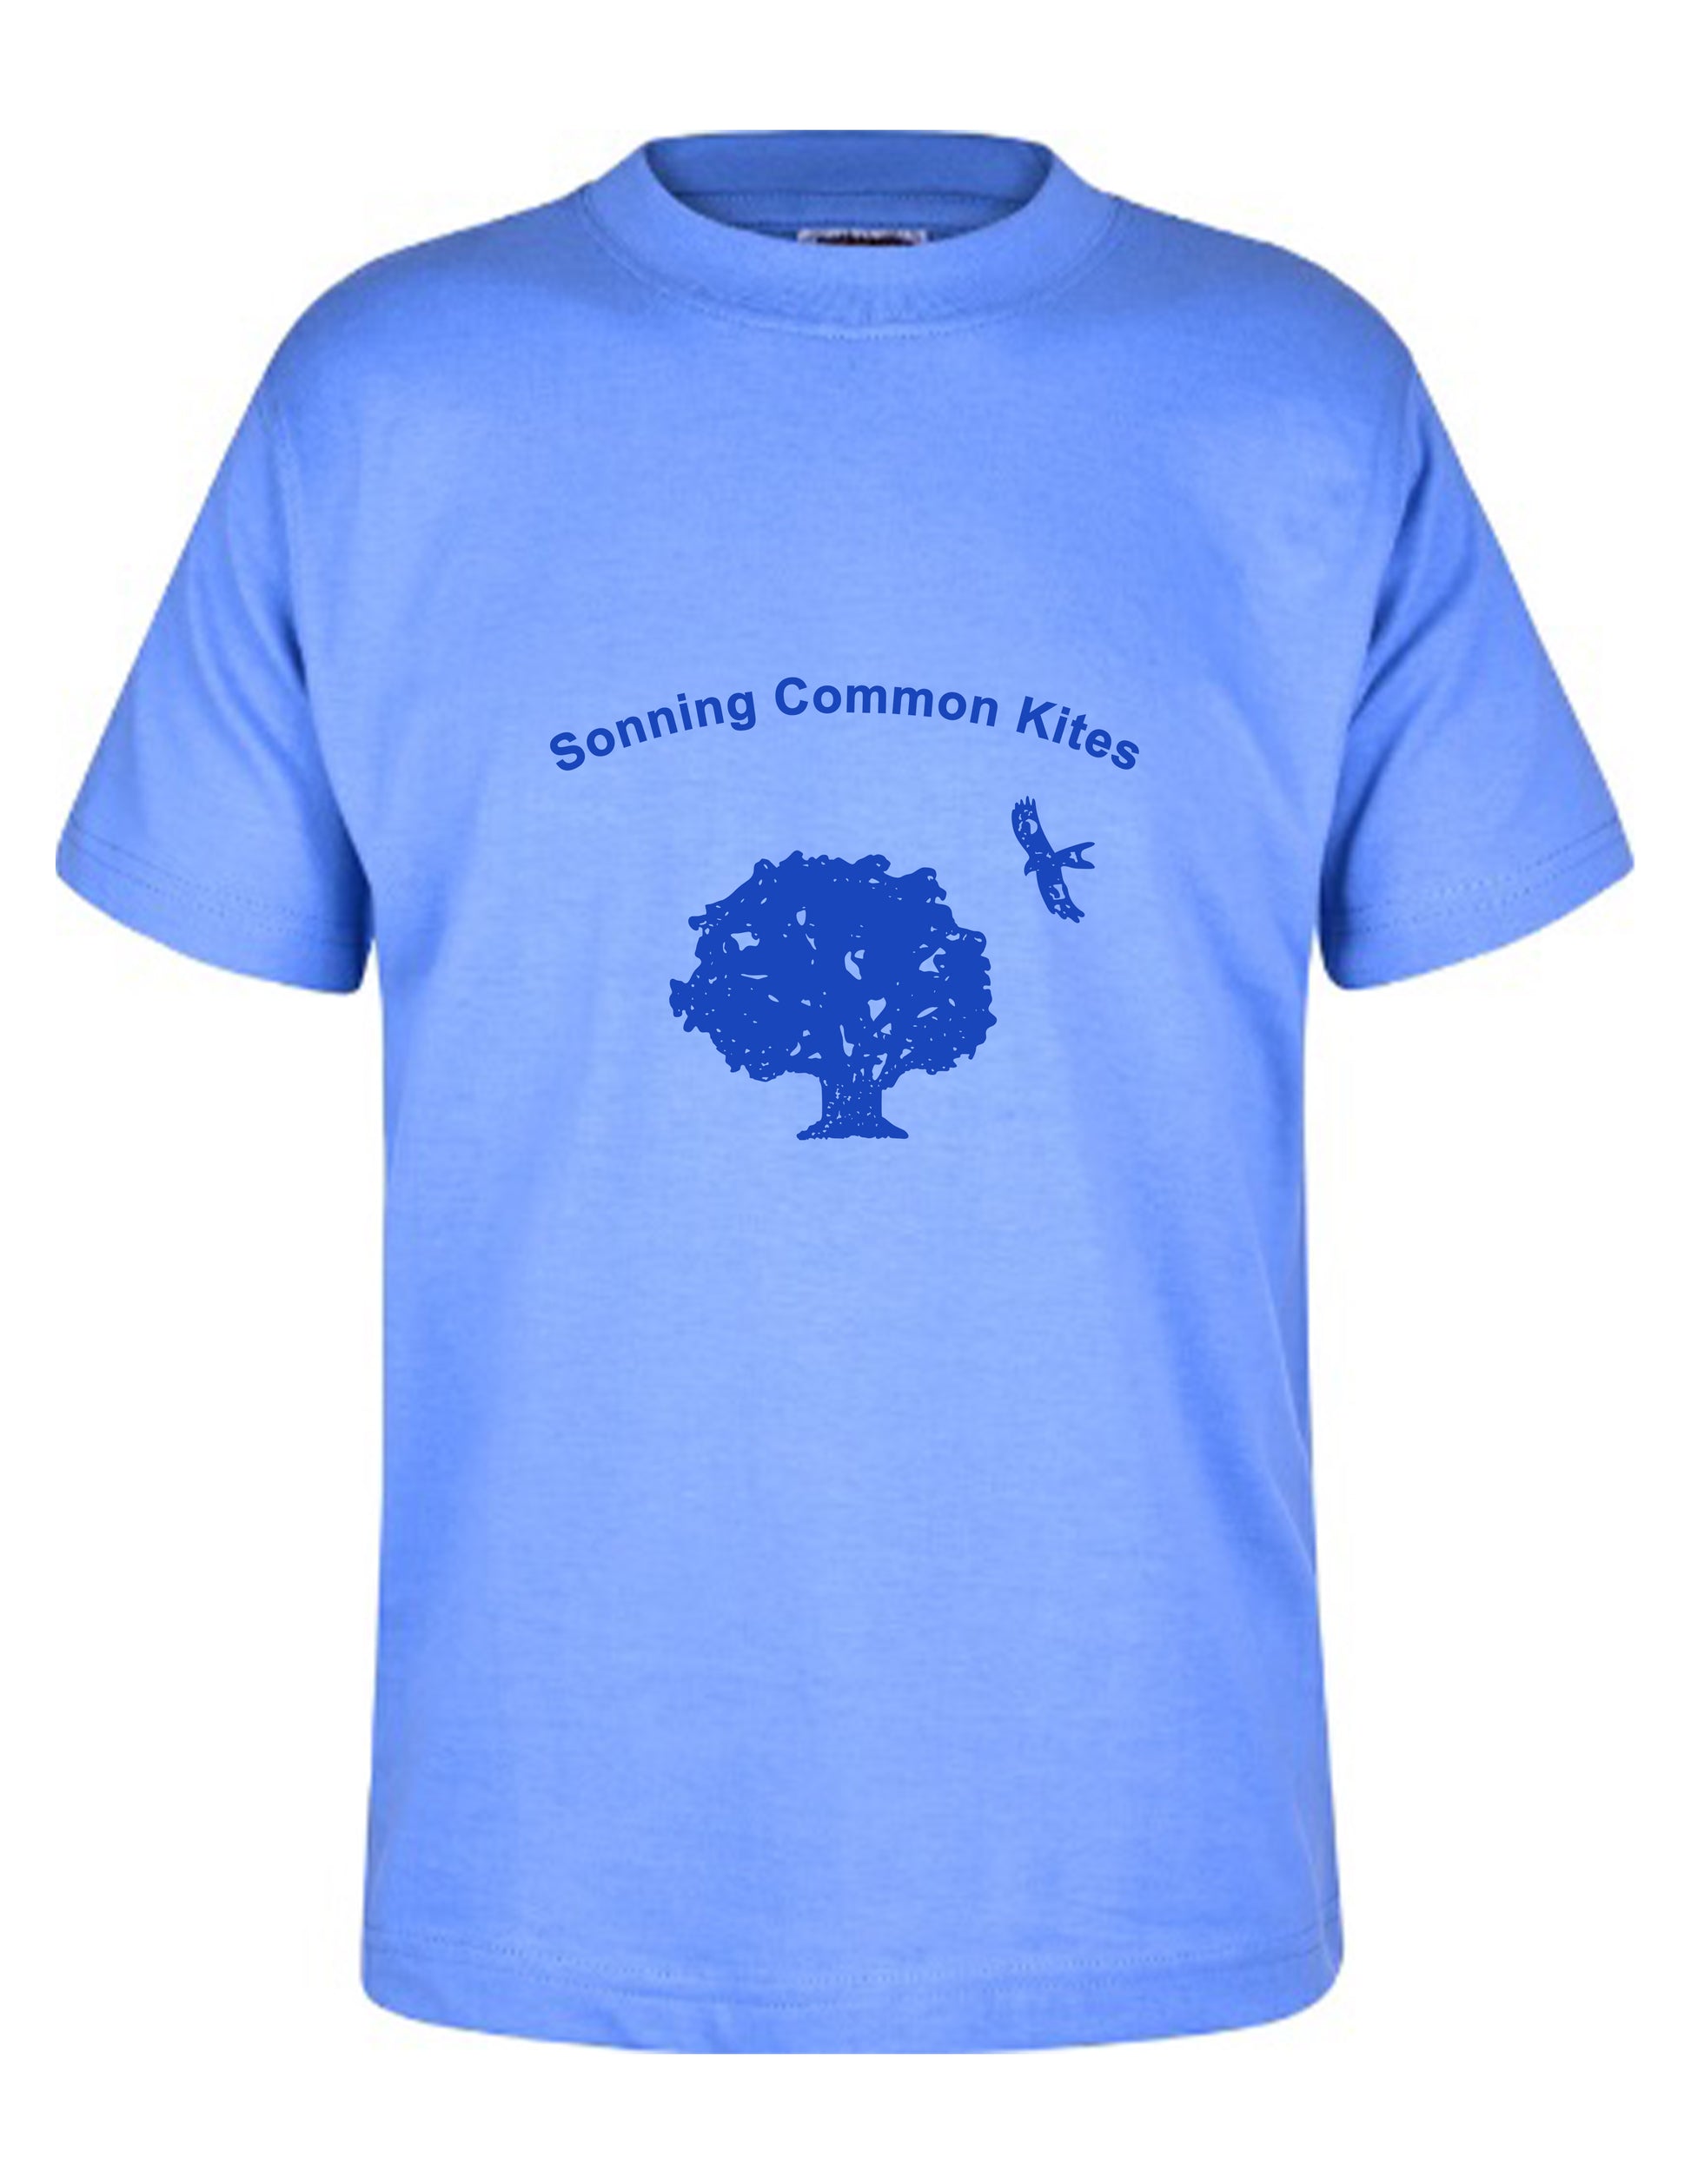 Sonning Common Kites - Unisex Cotton T-Shirt - School Uniform Shop